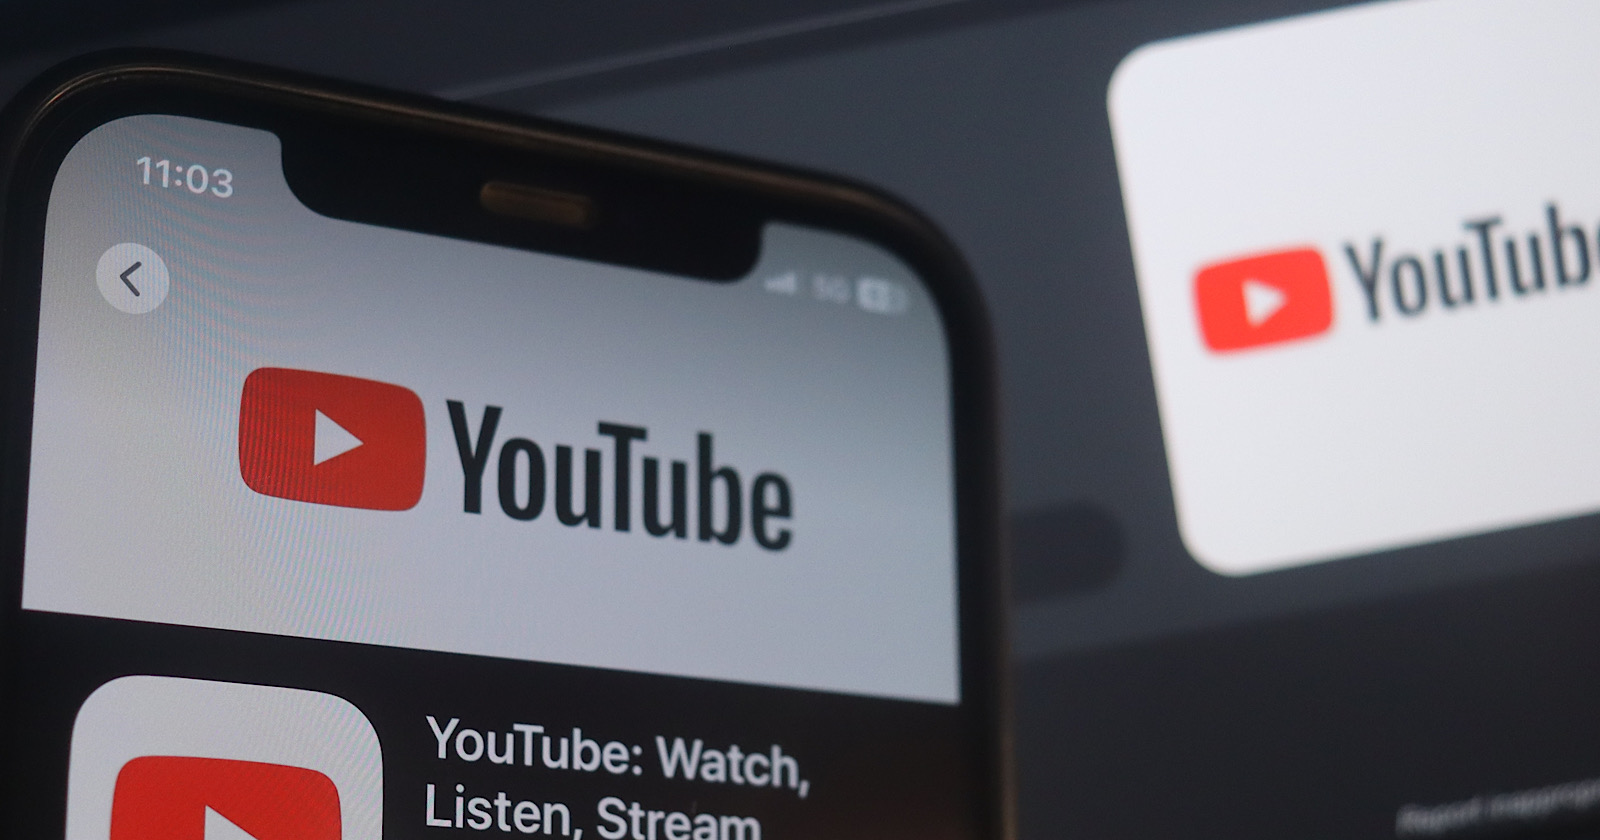 YouTube dice ‘No más confusión’: las cuentas de fans necesitan etiquetas claras